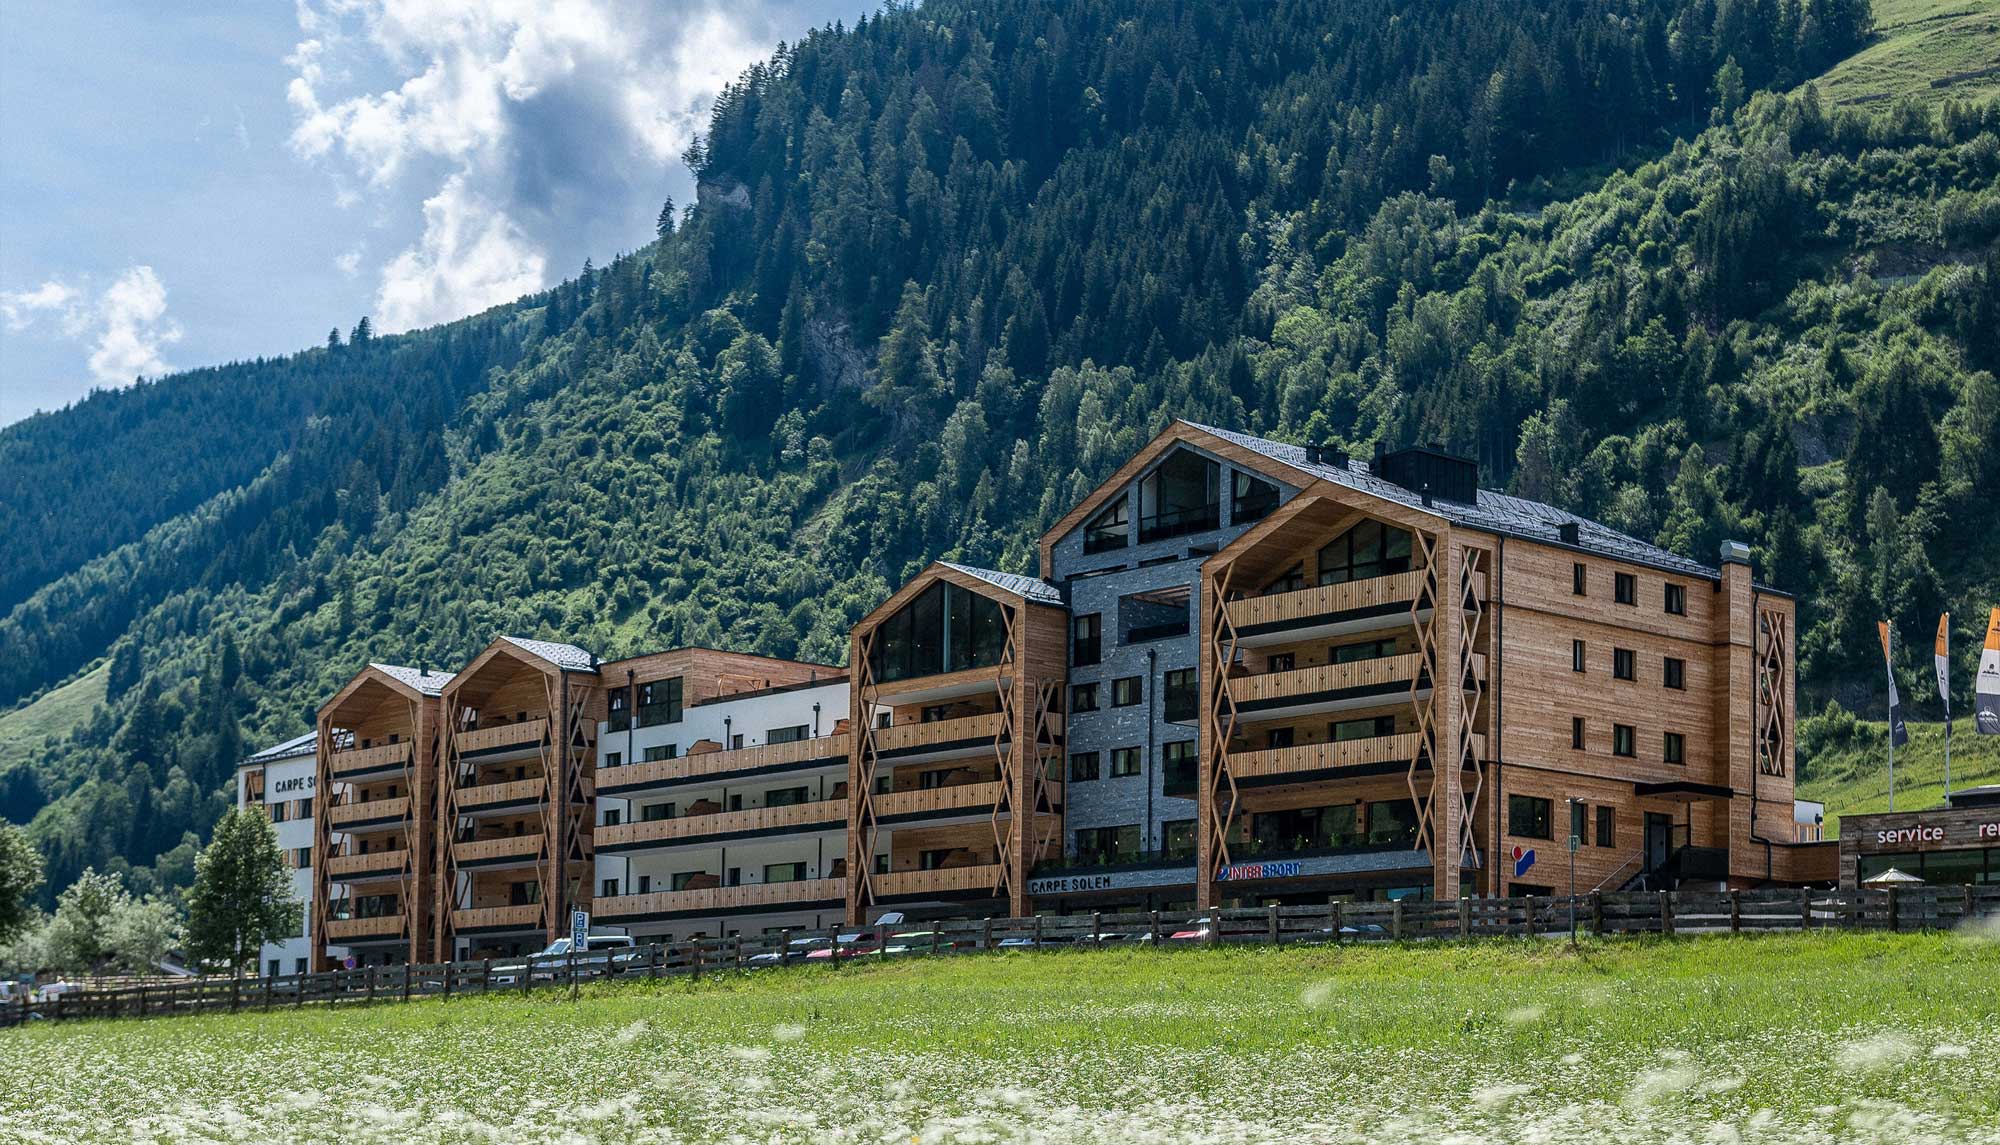 Hotel Ansicht von vorne | Architektur Planung | Kombination von Holz und Stein